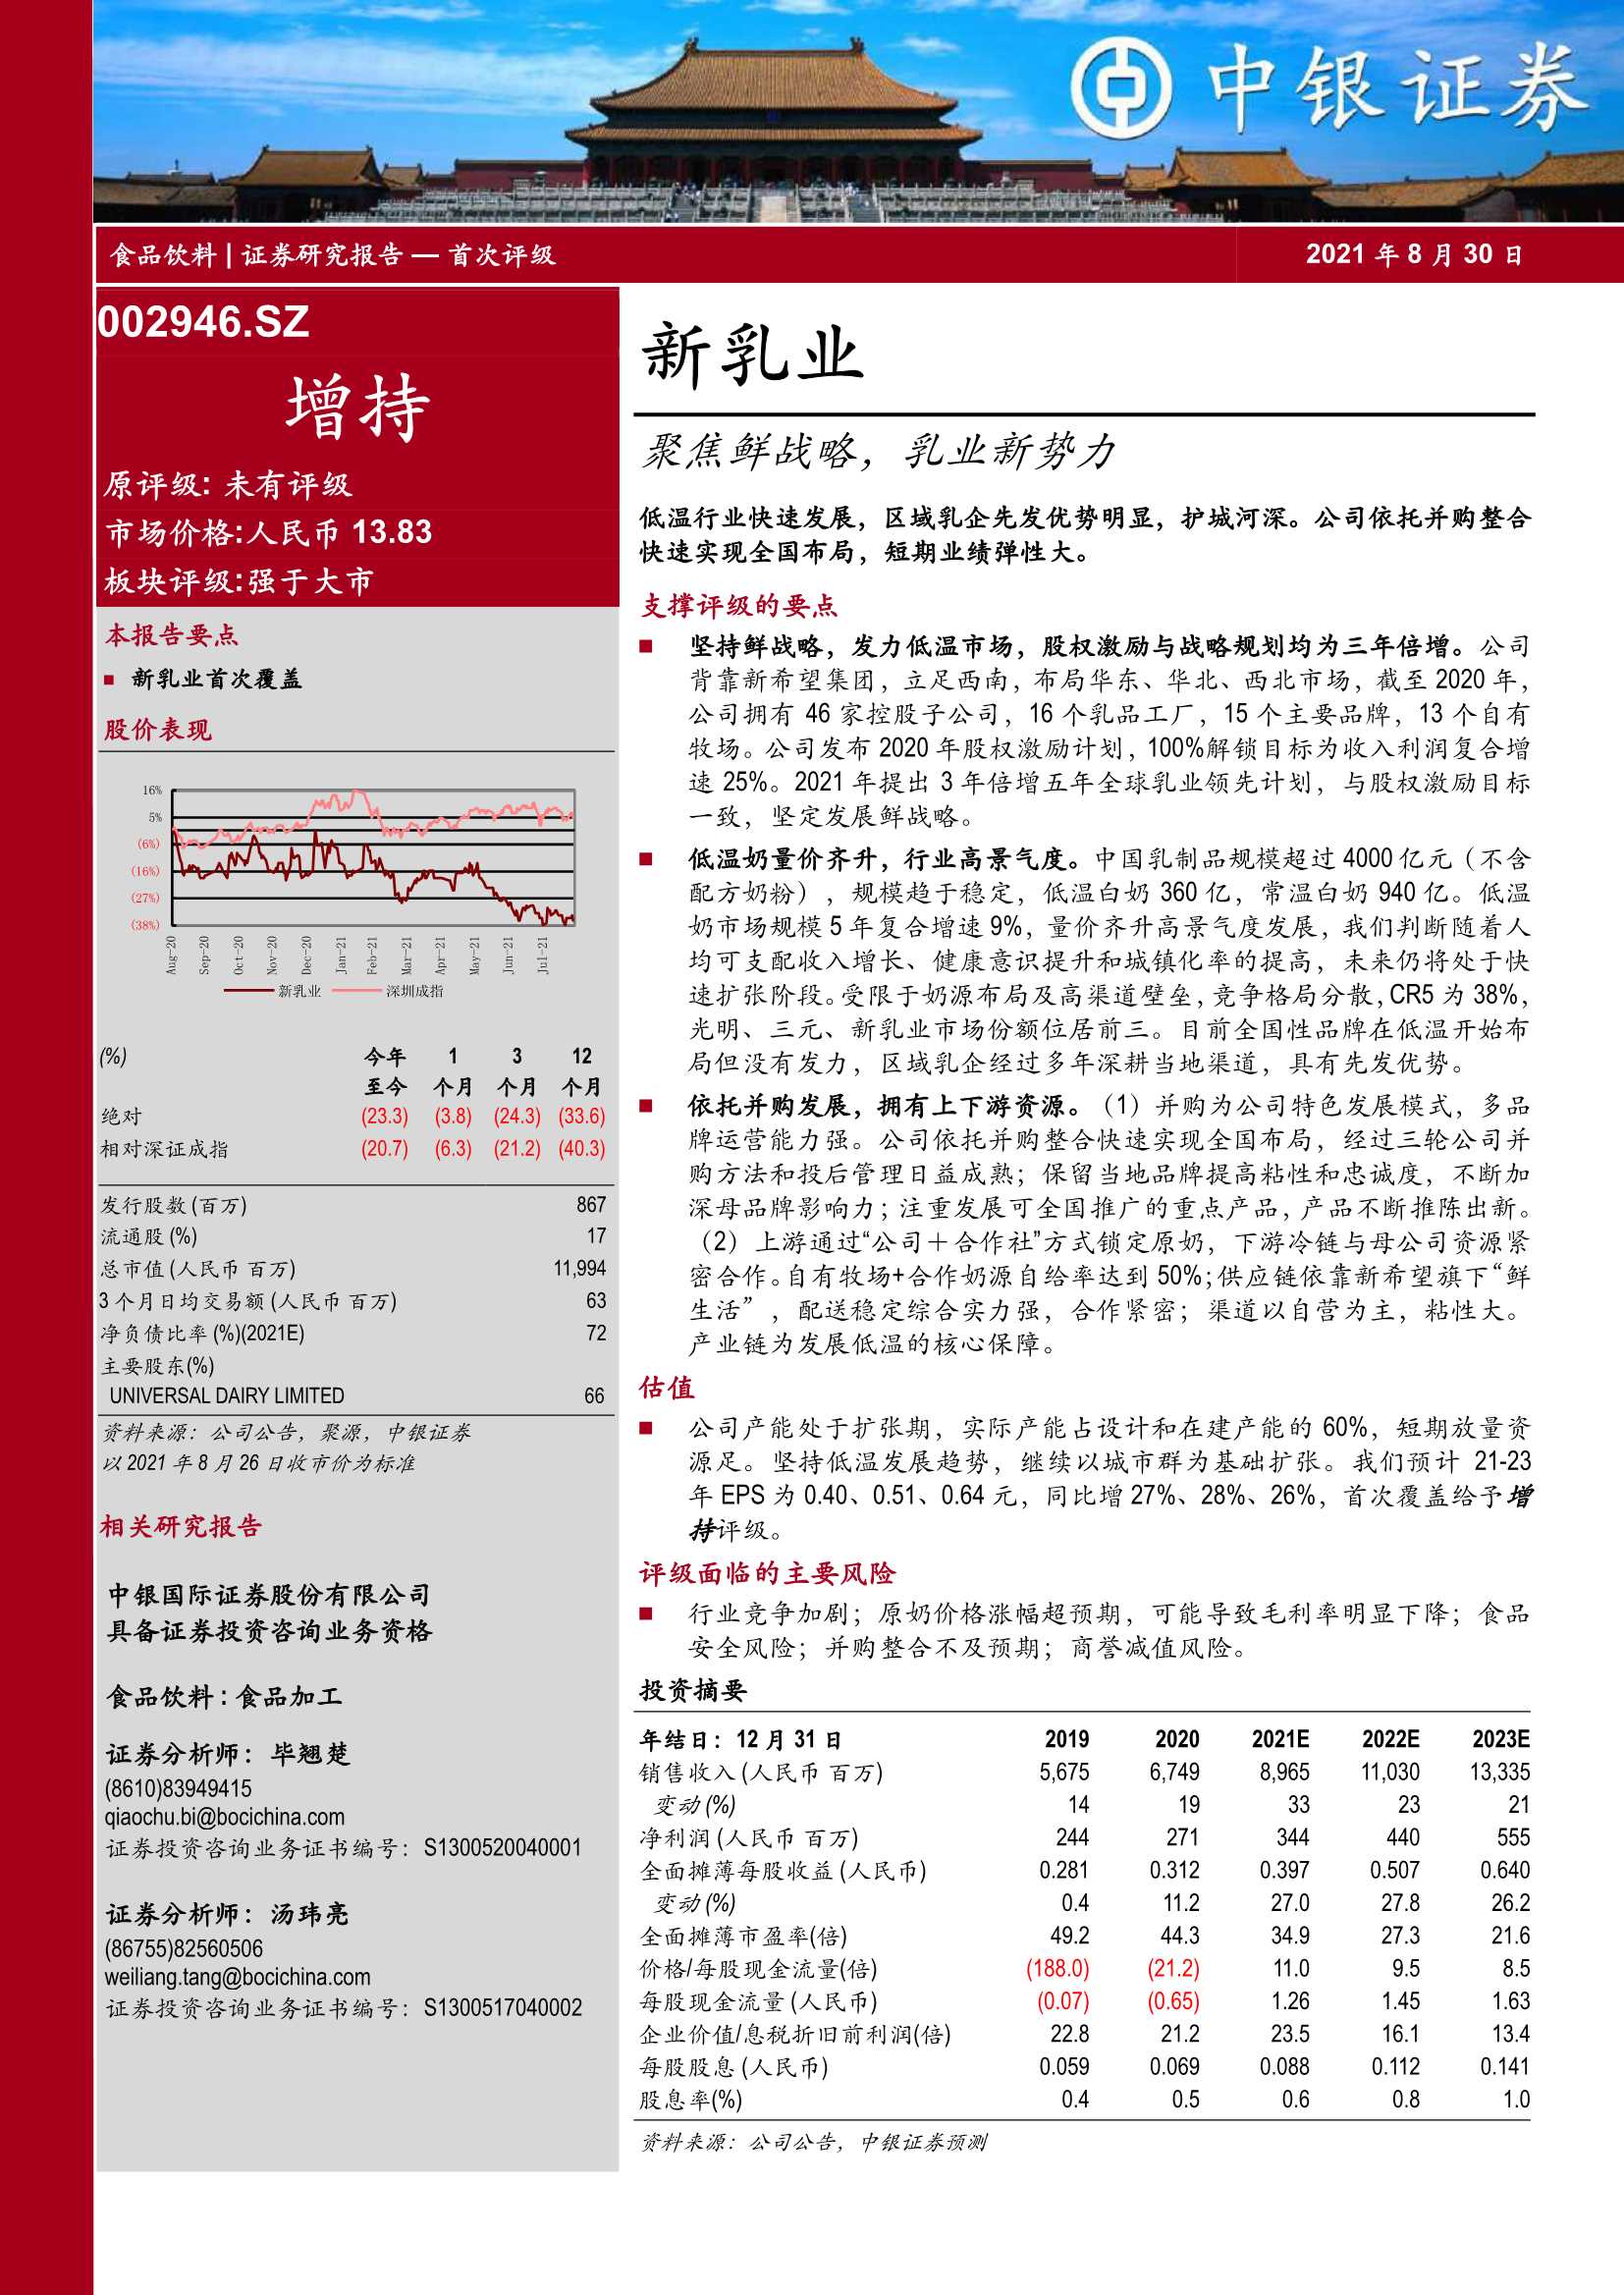 中银国际-新乳业-002946-聚焦鲜战略，乳业新势力-20210830-29页